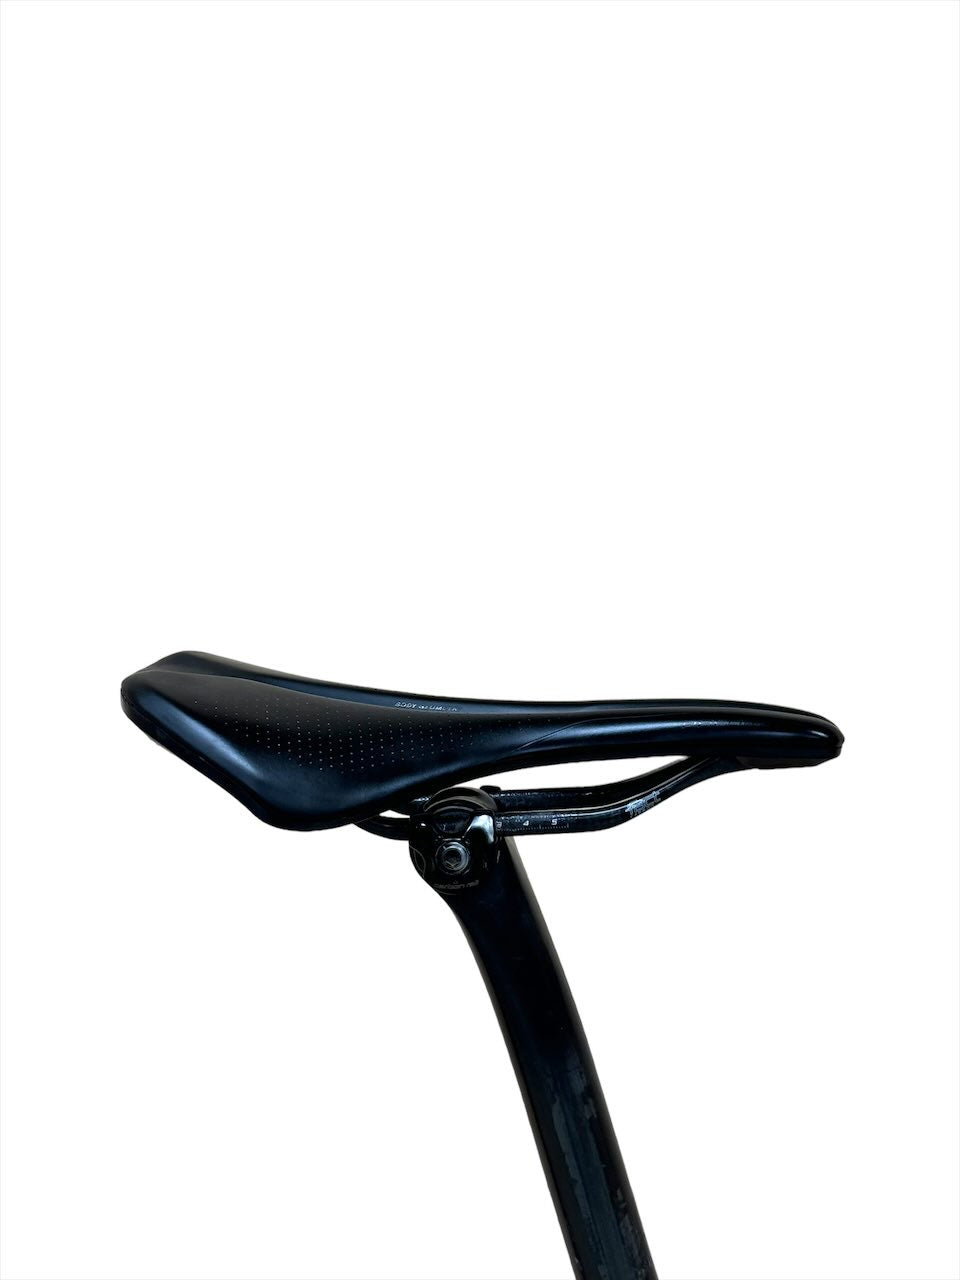 <tc>Specialized Epica S Works 29 pollici Mountain bike</tc>